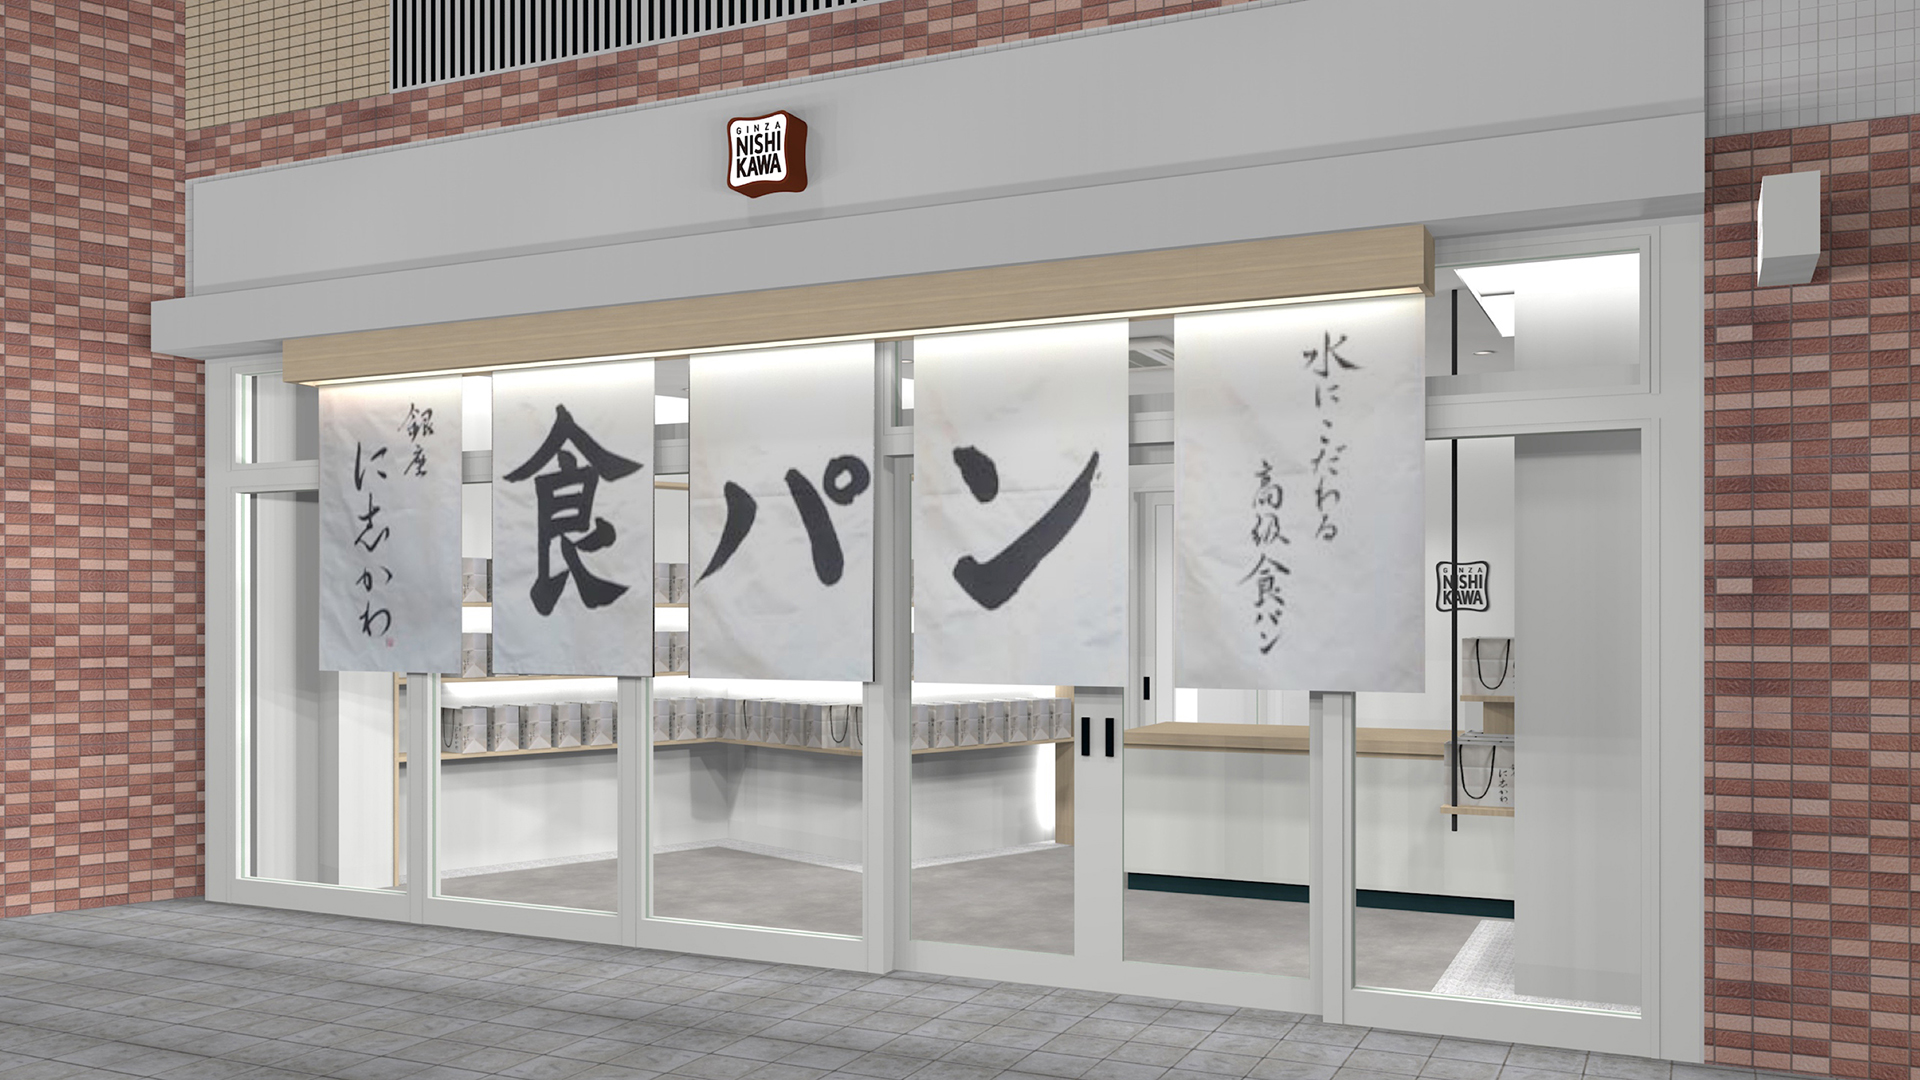 10月25日 金 銀座に志かわ 相模大野店 が神奈川県相模原市にオープンいたします 銀座に志かわ